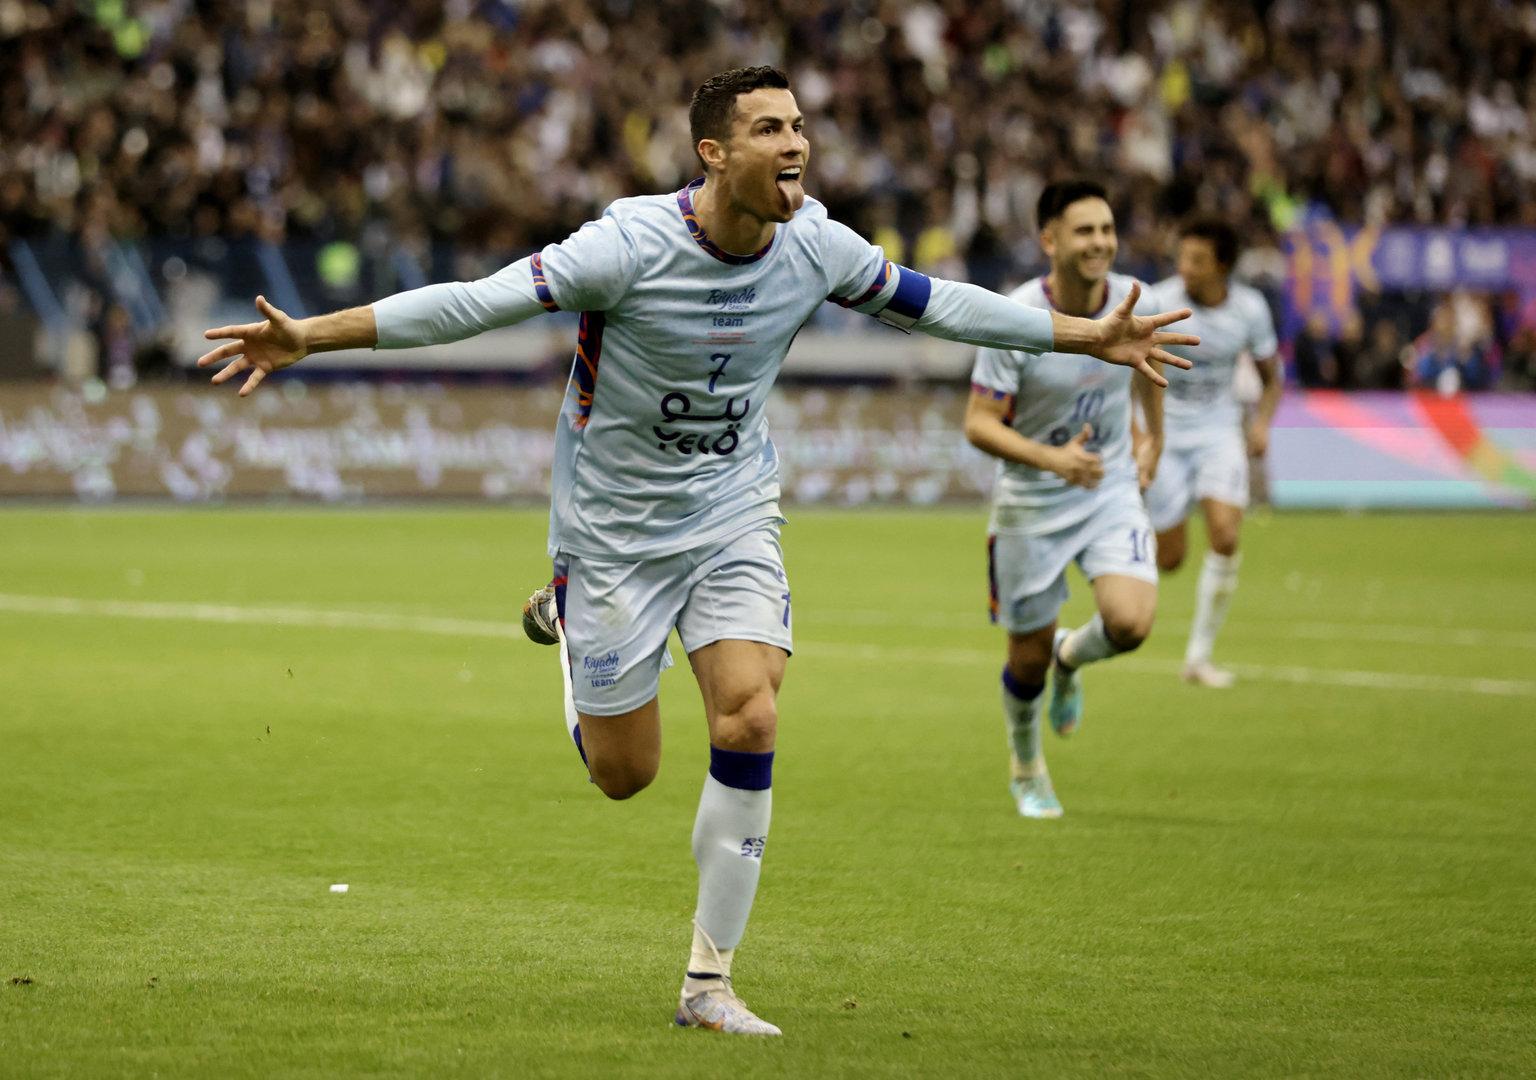 Spektakel in Riad: Zwei Ronaldo-Tore beim 4:5 gegen Messi 